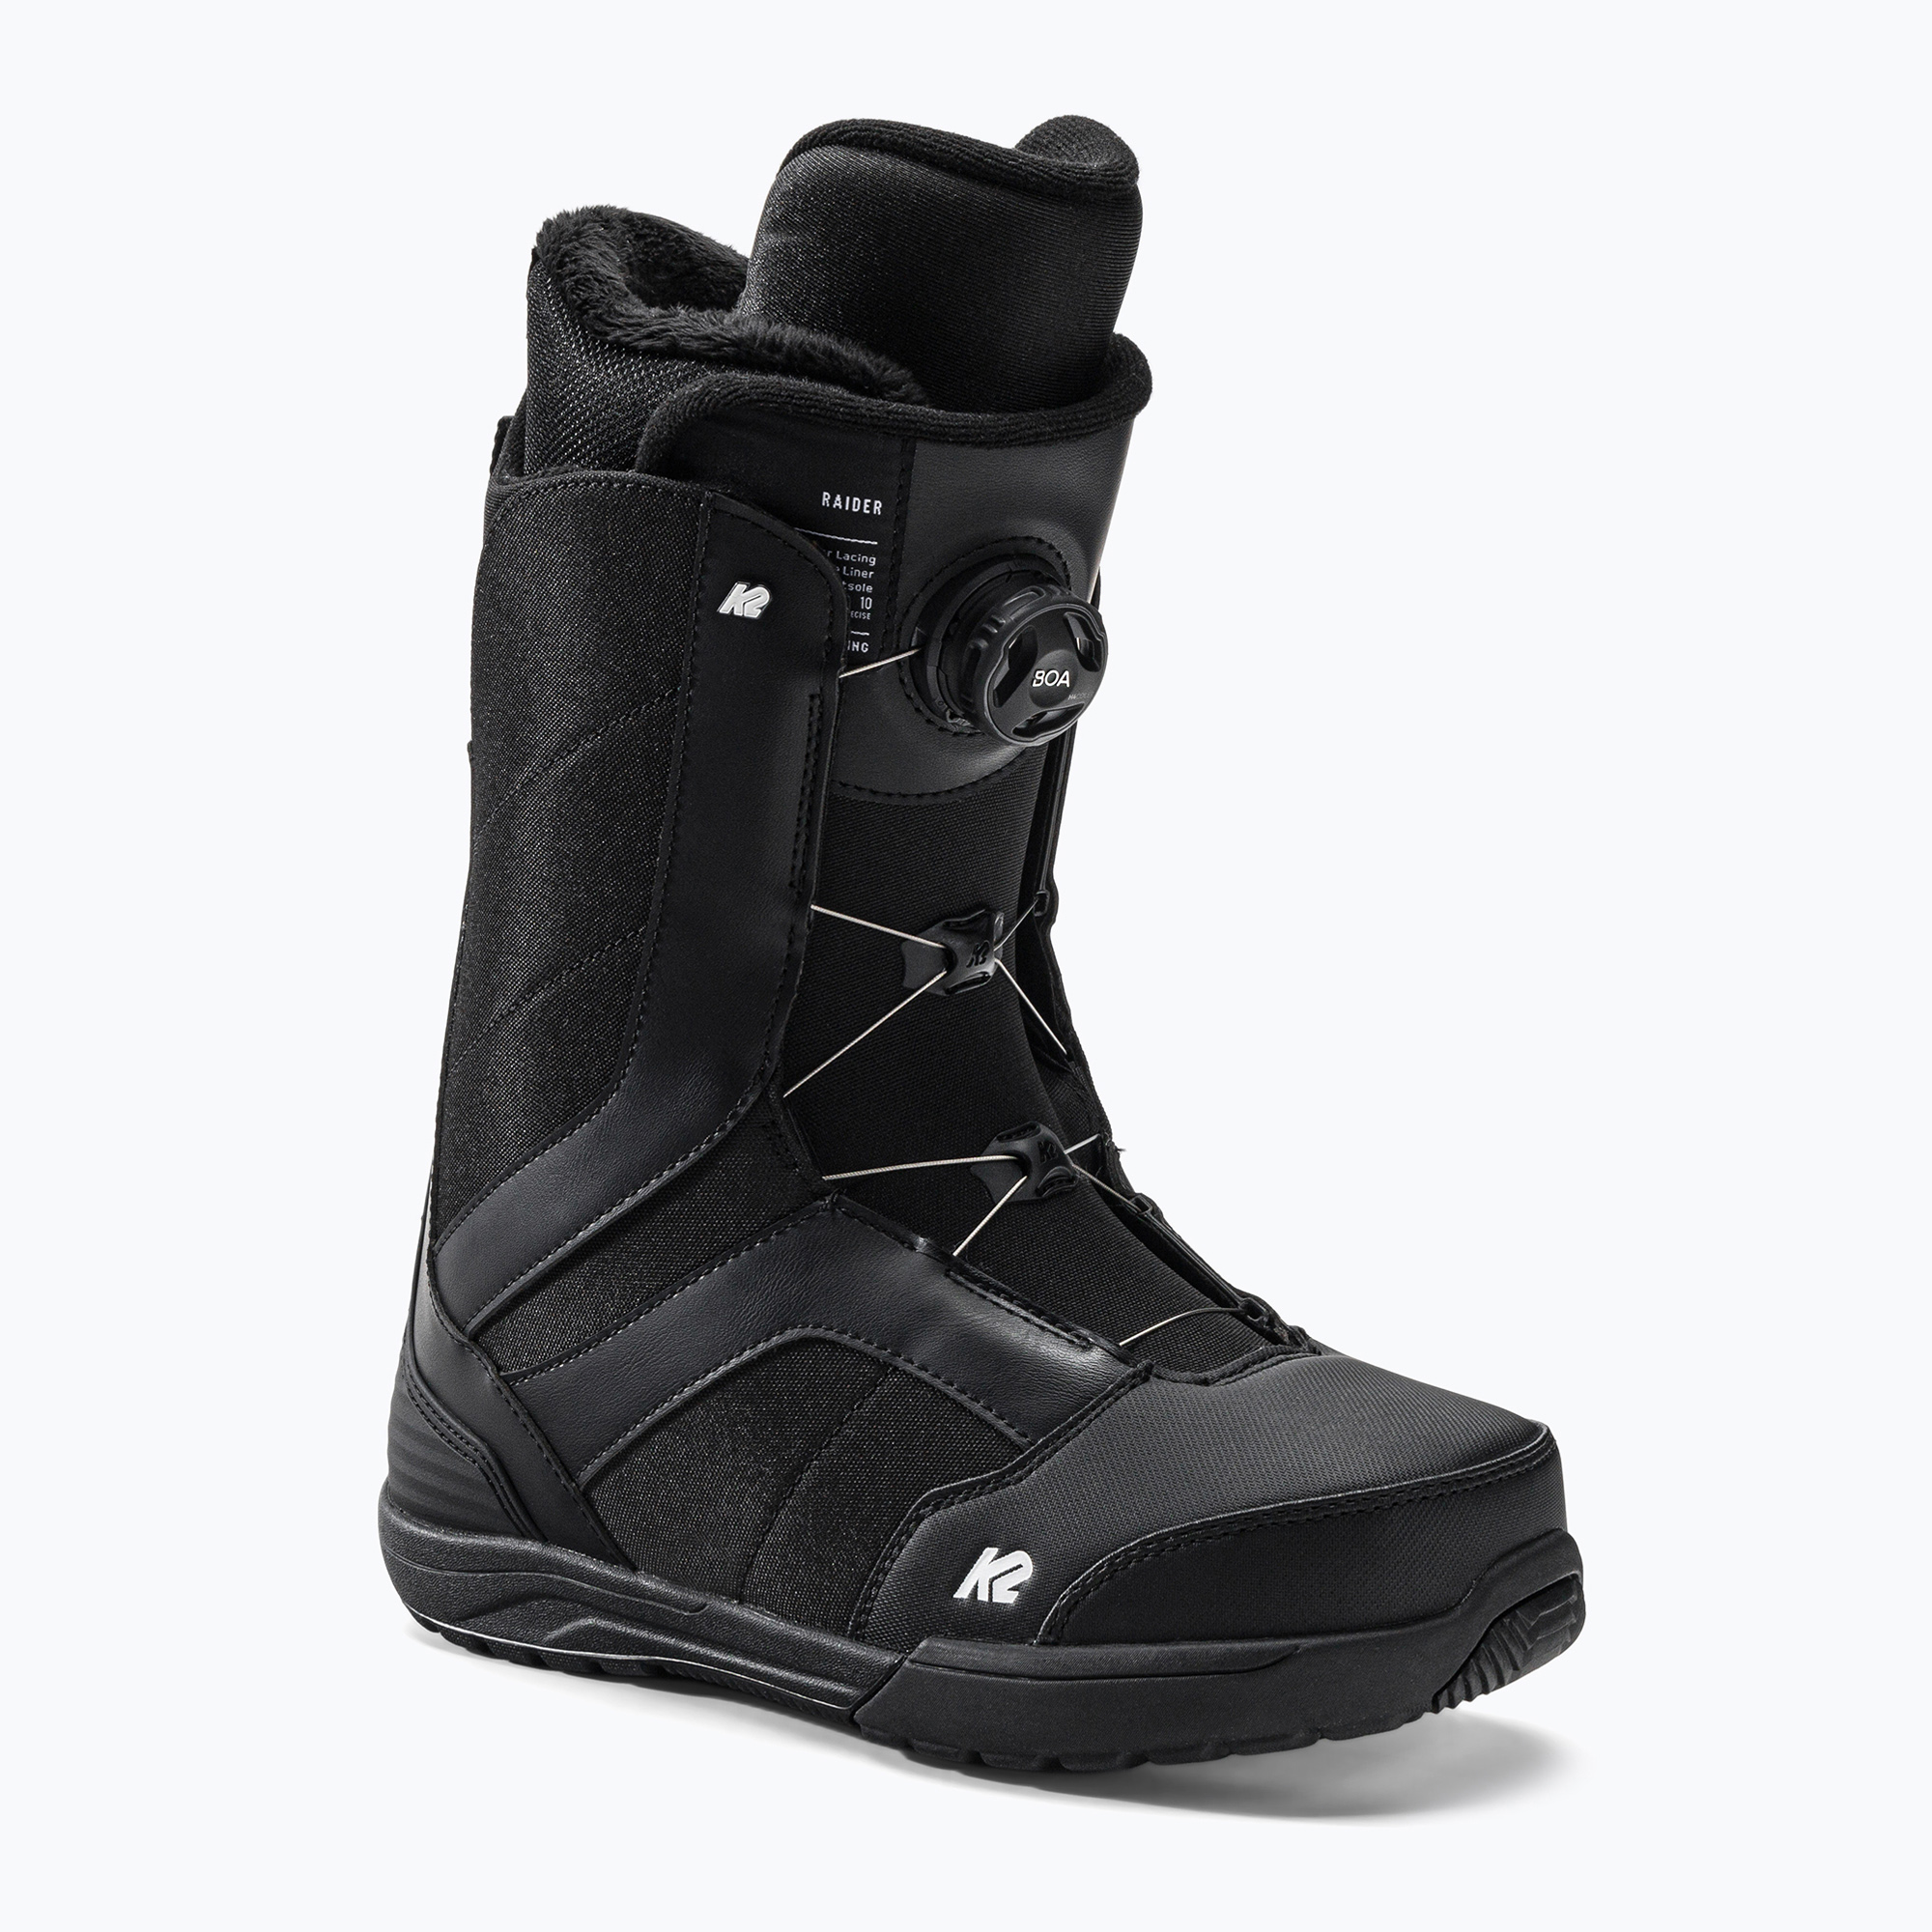 Snowboardové topánky K2 Raider grey 11E2011